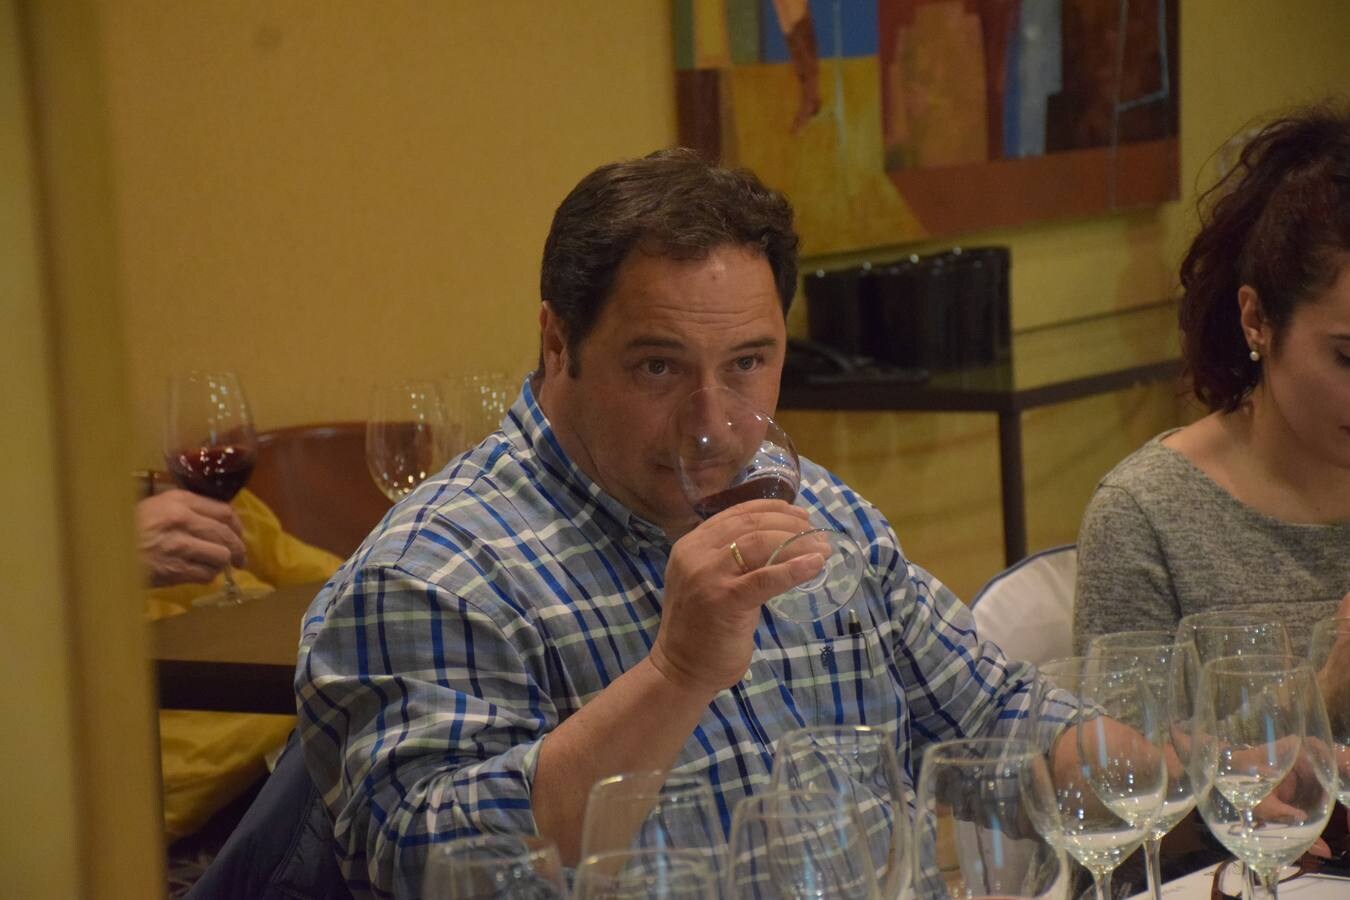 Mateo Ruiz, Bodegas D.Mateos, reivindica sus raíces y el factor diferencial de la garnacha, el graciano y el mazuelo en la personalidad de los vinos de la comarca